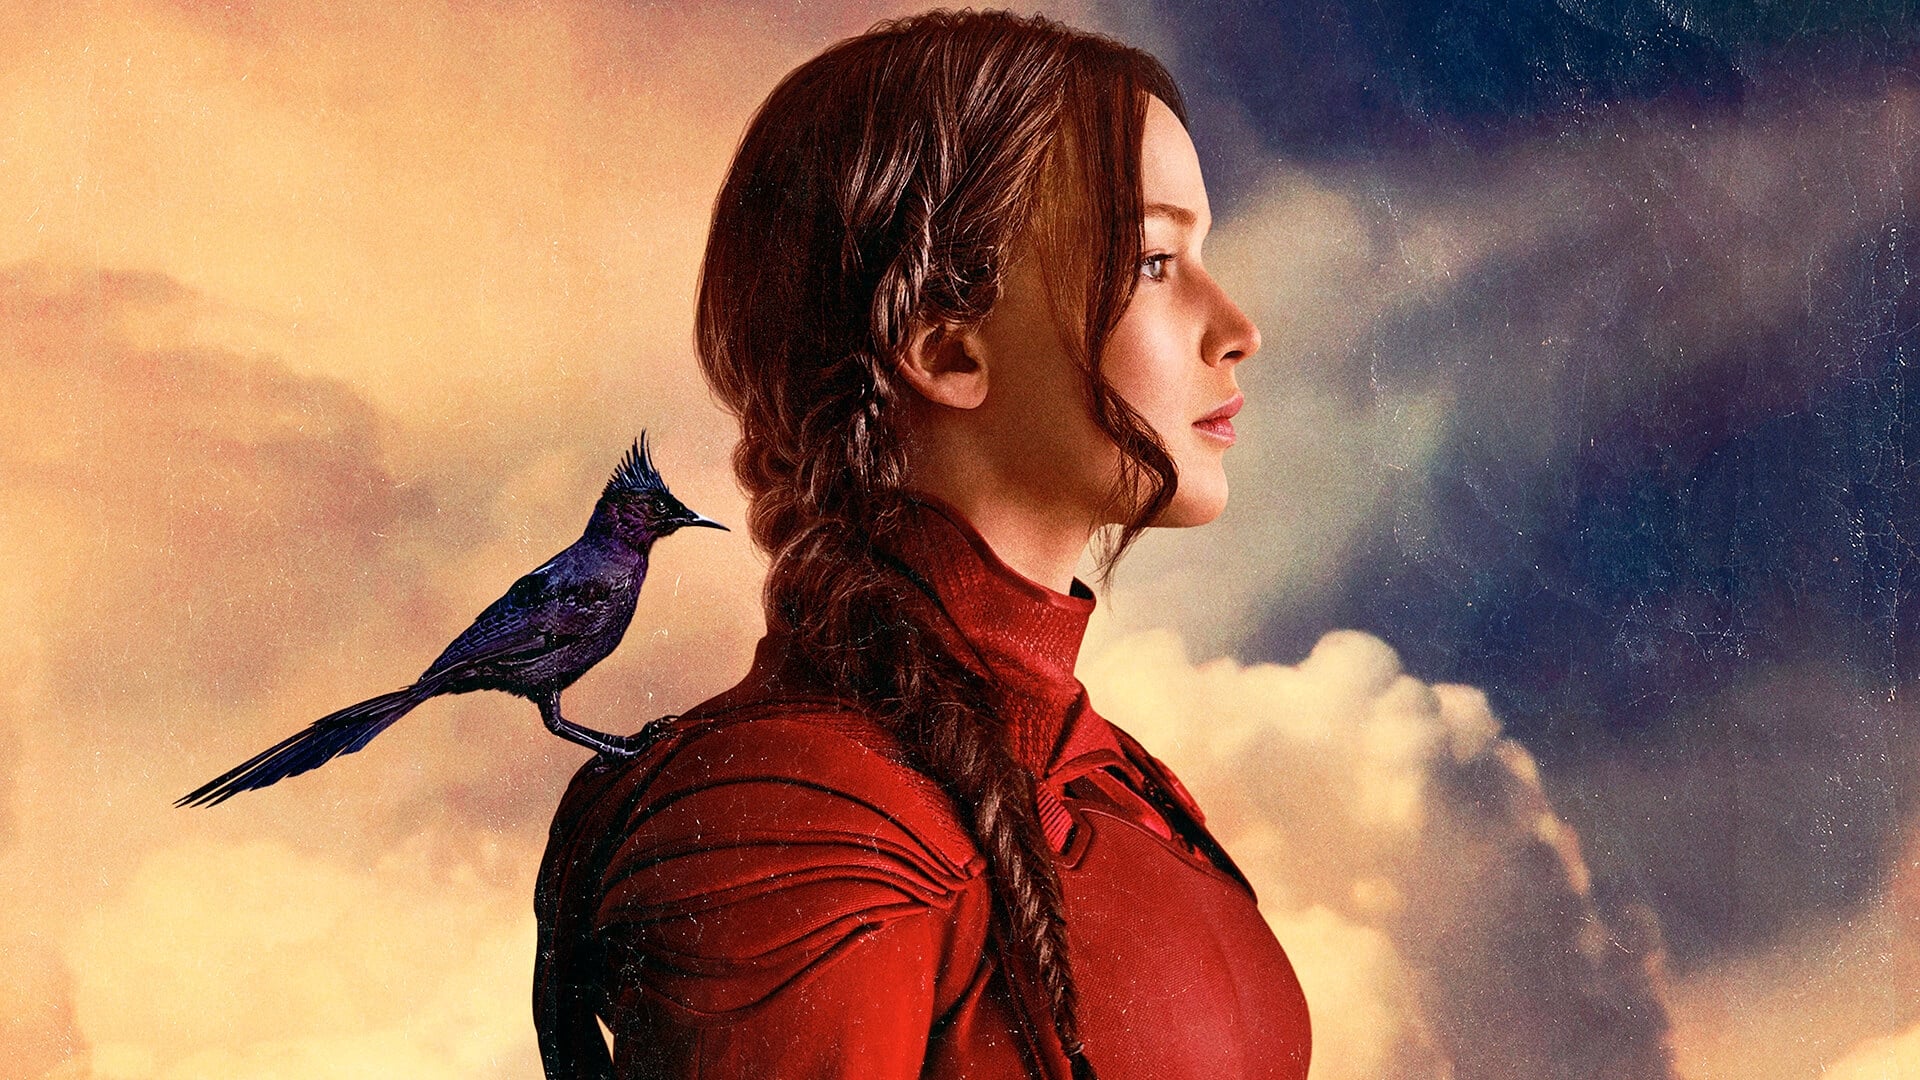 Hunger Games: Il canto della rivolta - Parte 2 (2015)